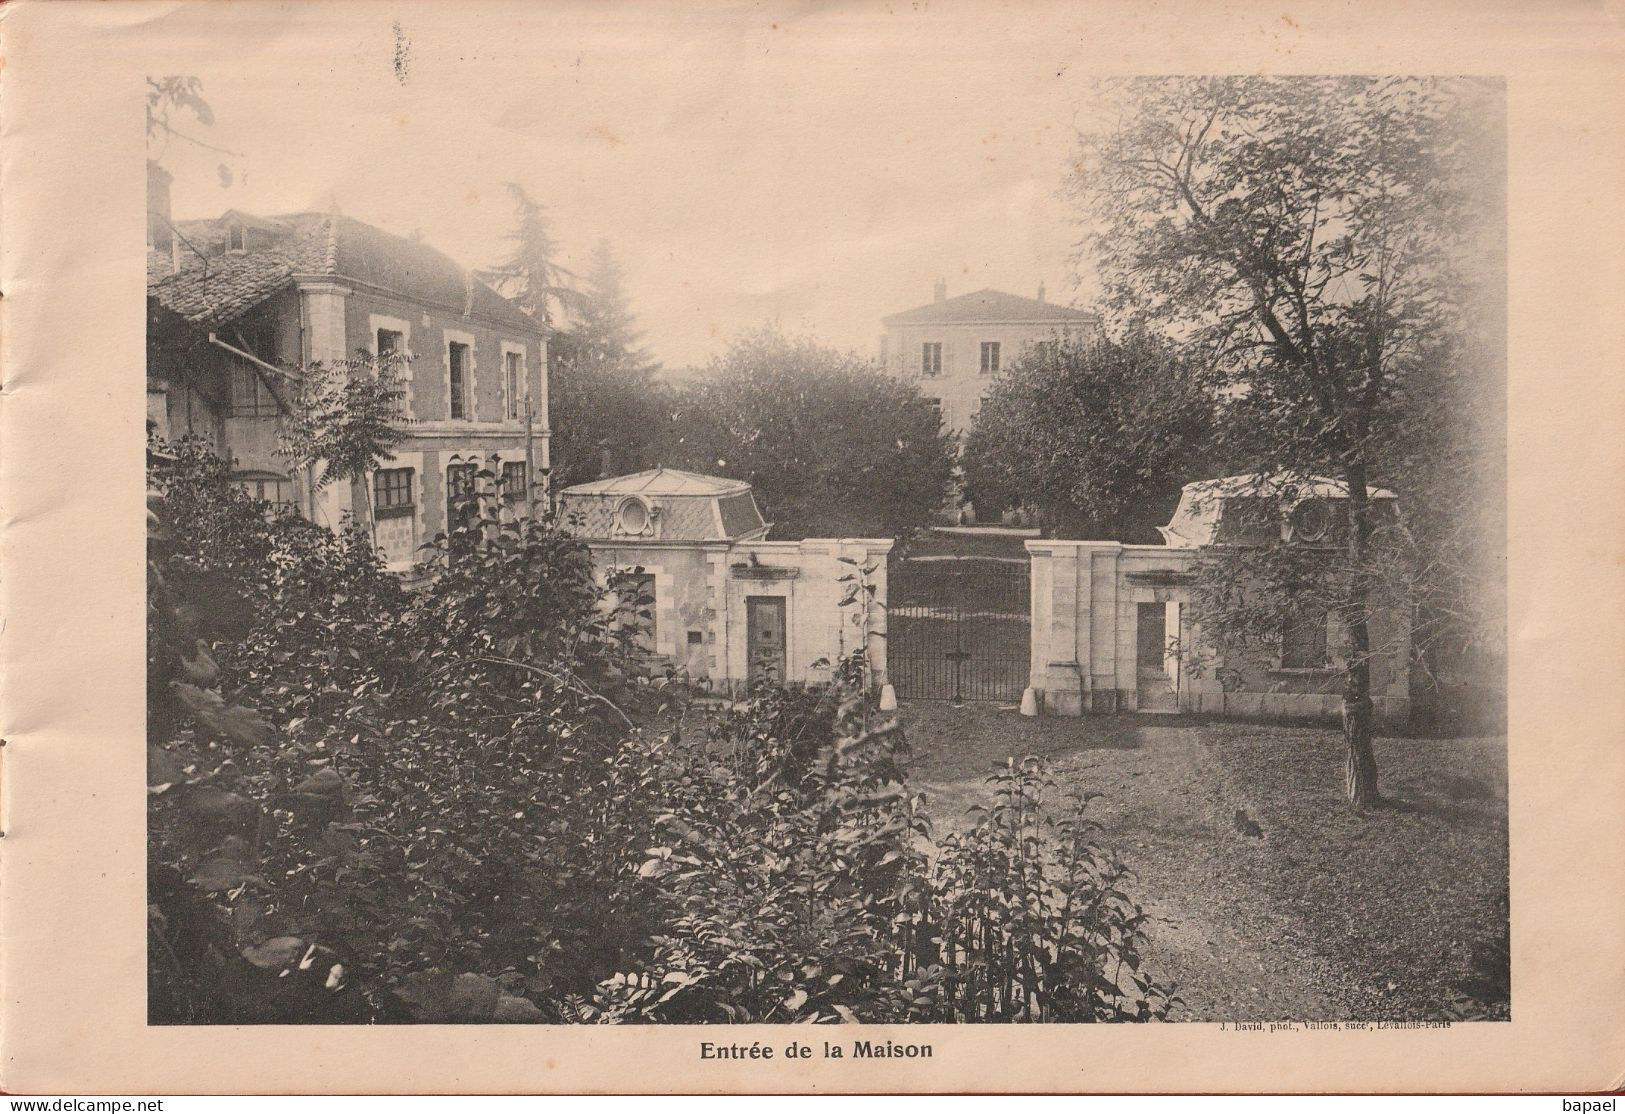 Grenoble (38) - Institution Libre Du Rondeau Montfleury (1910-1911) - Rhône-Alpes